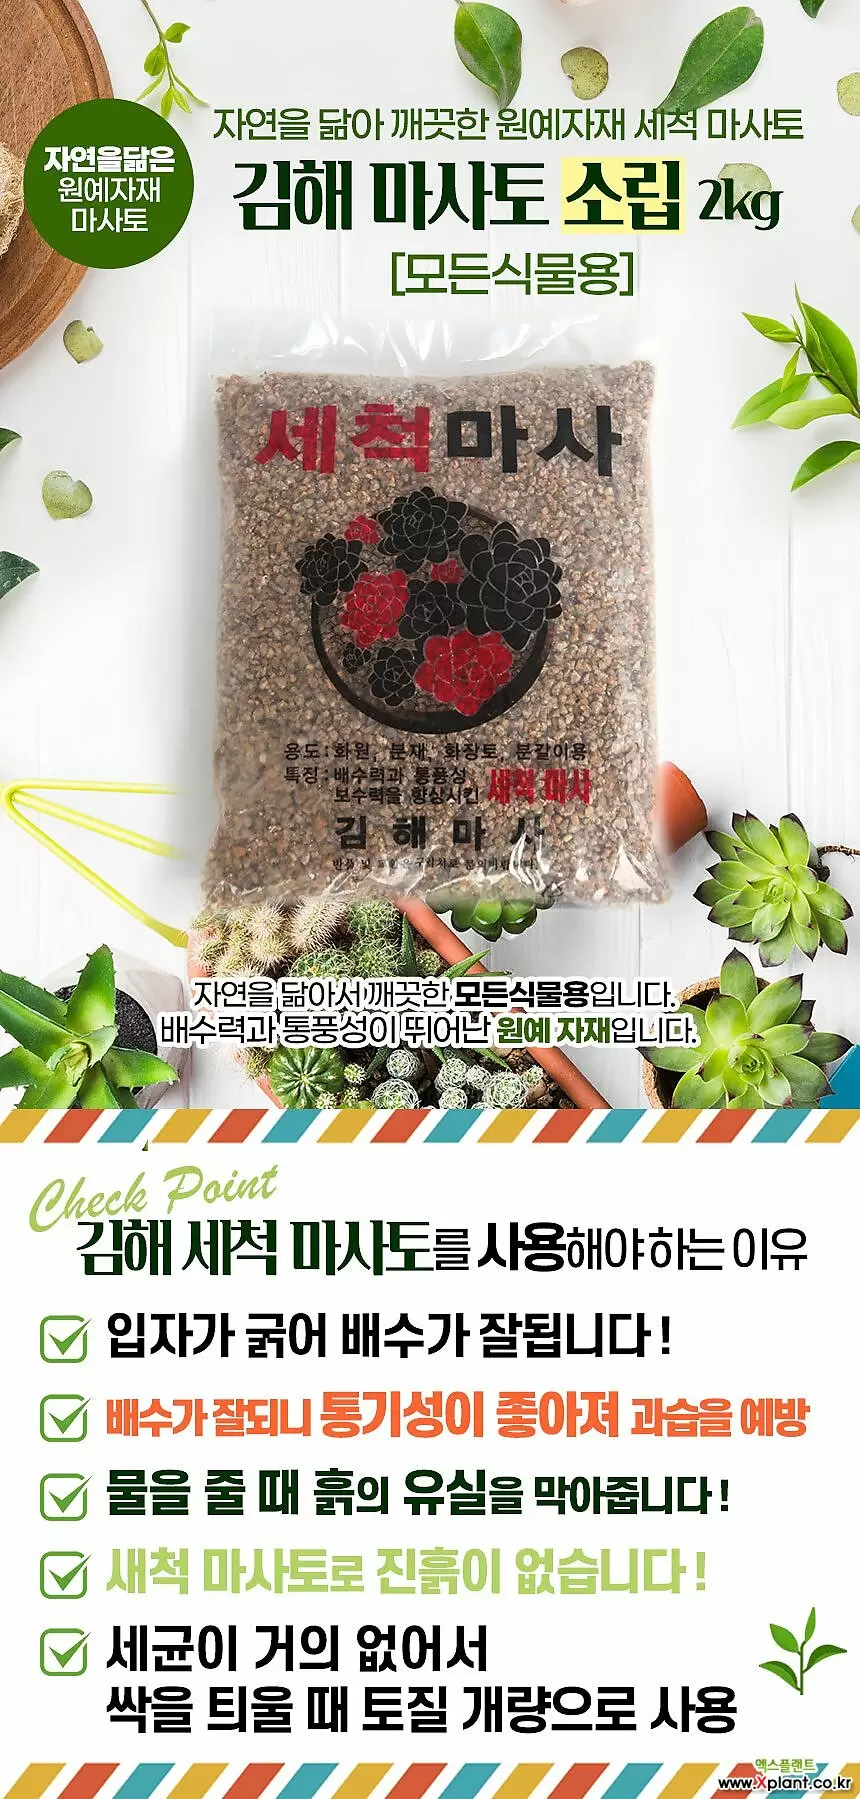 국민마사토 김해세척마사(소립)-주말농장 식물보호제 영양제 활력제 인아트스튜디오